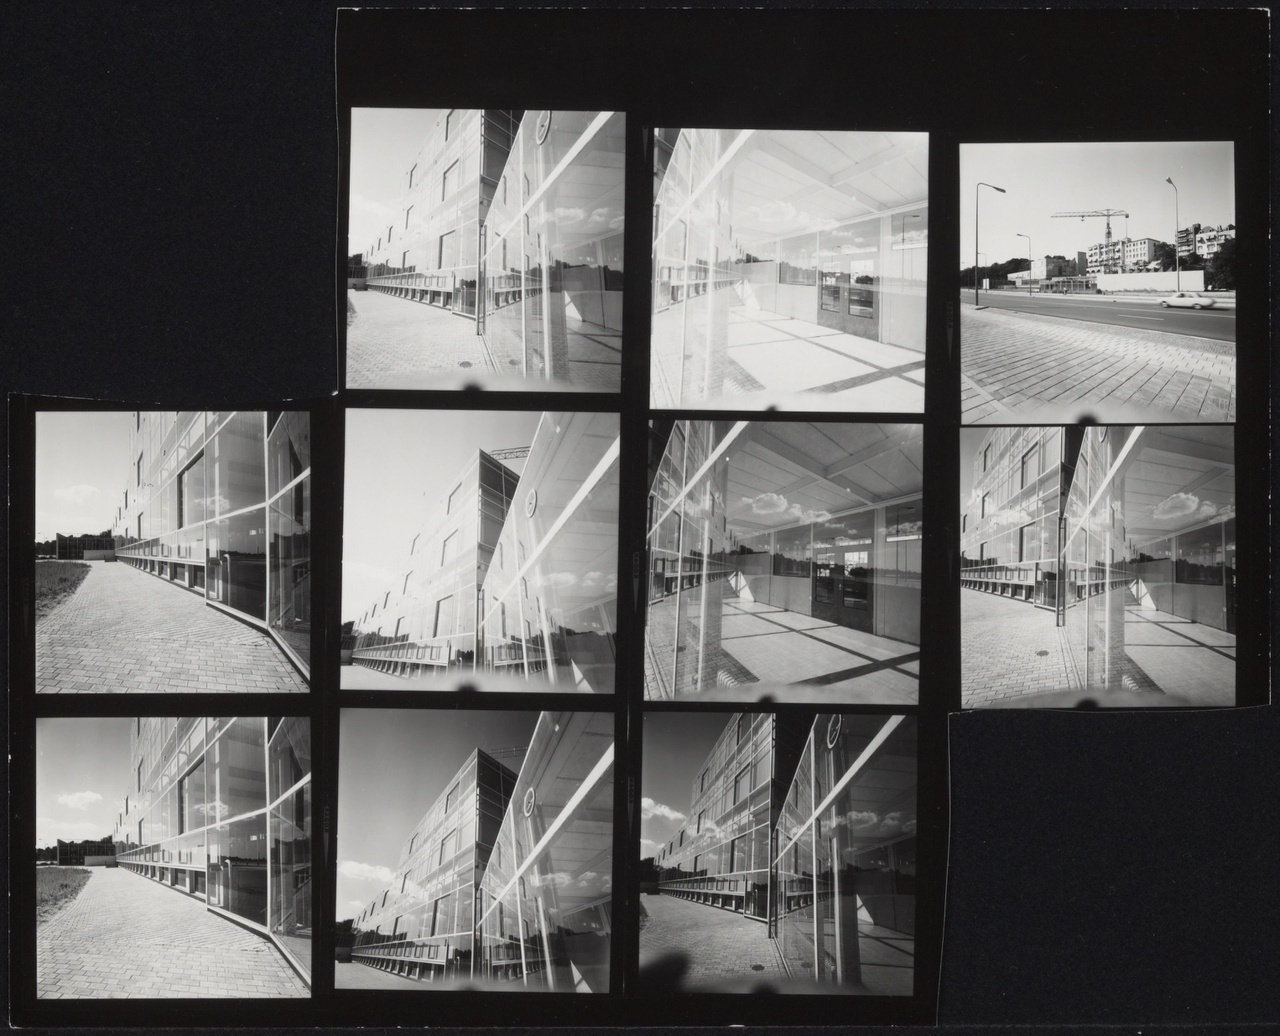 Afbeelding van Kunstacademie Arnhem, ca.1963, tien contact afdrukjes, van de glasgevels